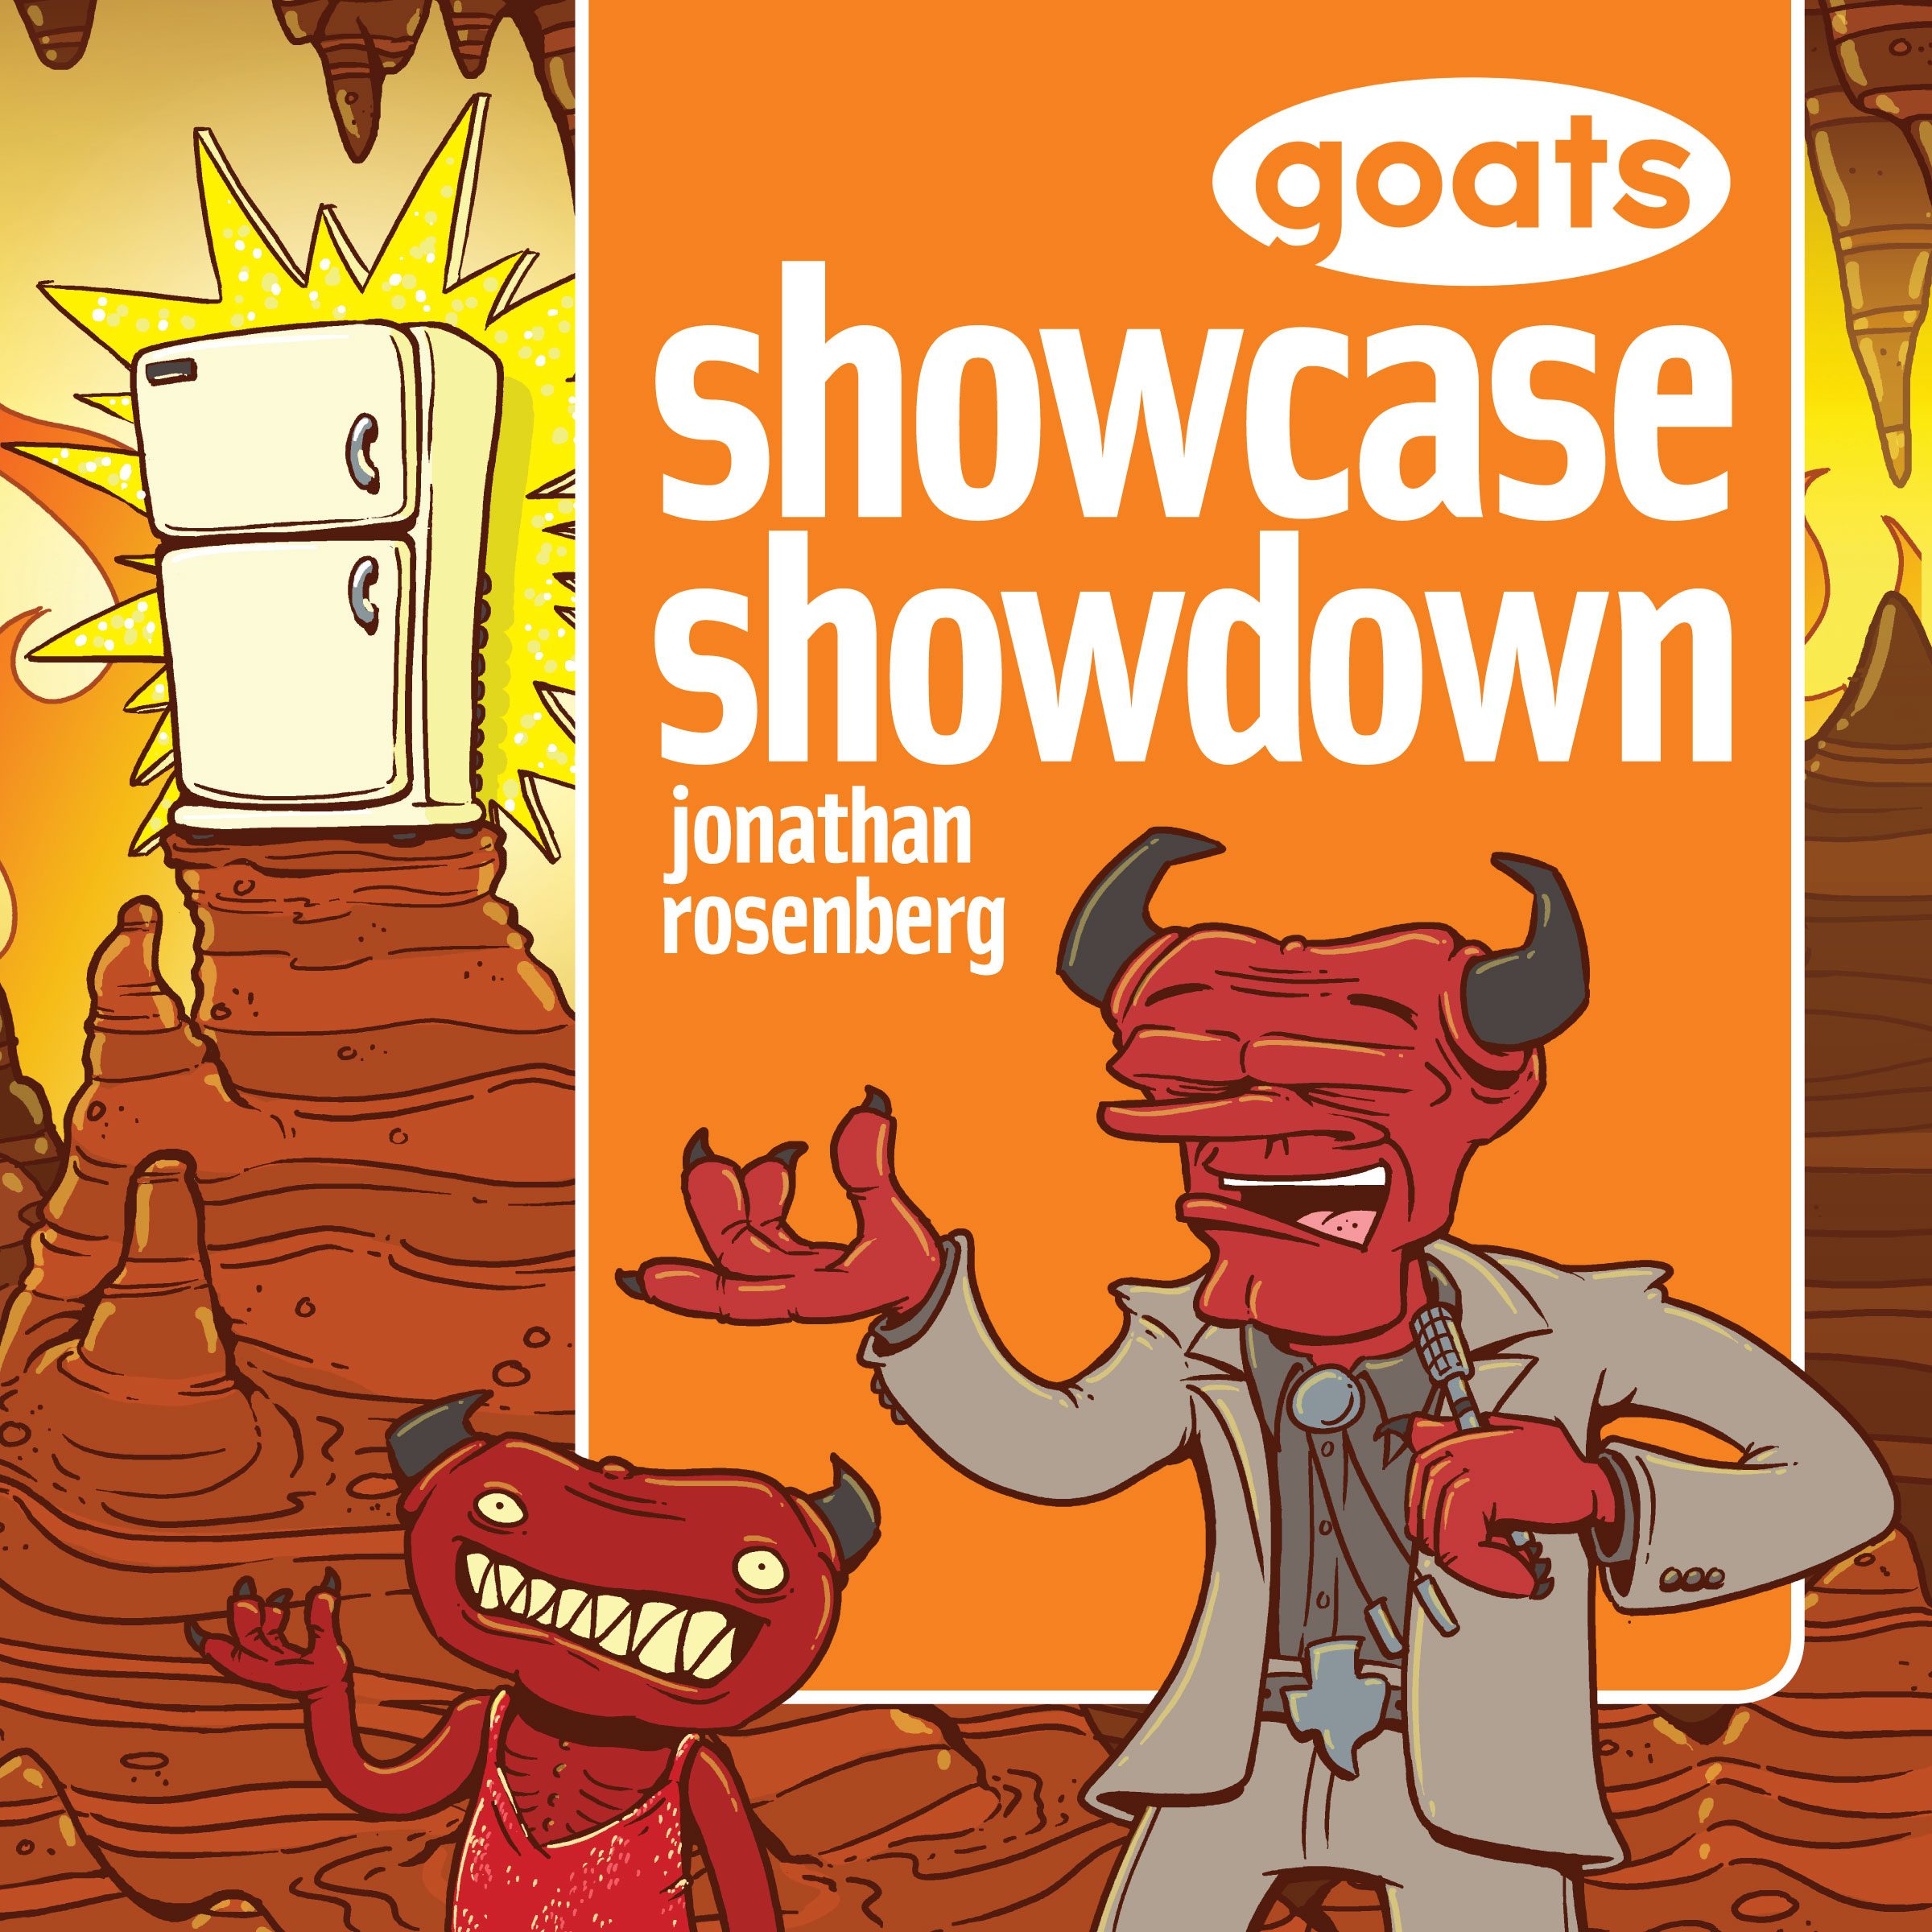 Goats Showcase Showdown